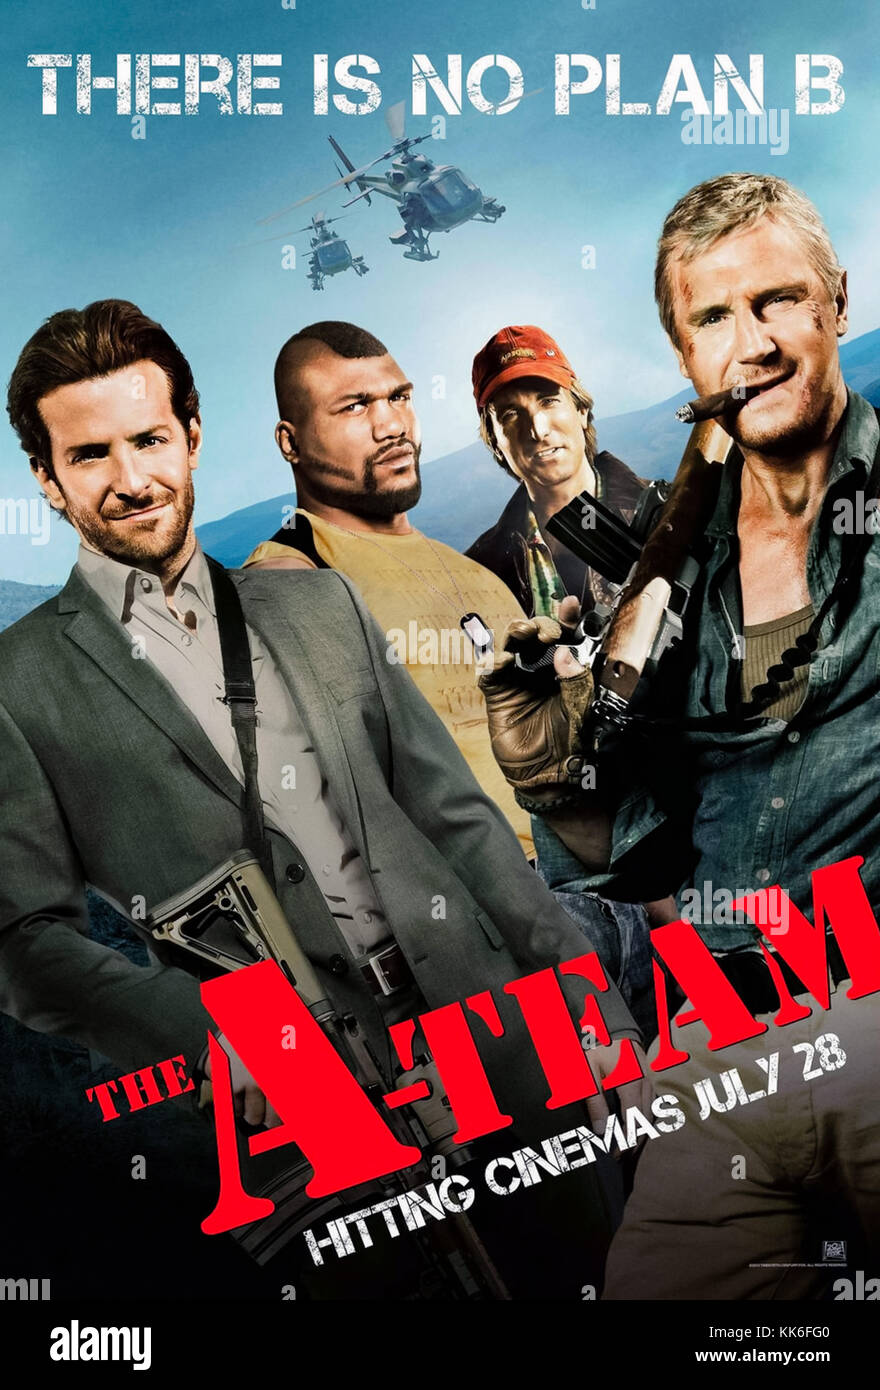 Das A-Team (2010) von Joe Carnahan Regie und Hauptdarsteller Liam Neeson, Bradley Cooper, Sharlto Copley und Quinton 'Rampage' Jackson. Irak Kriegsveteranen auf dem Durchlauf für ein Verbrechen, das er nicht begangen hatte. Stockfoto